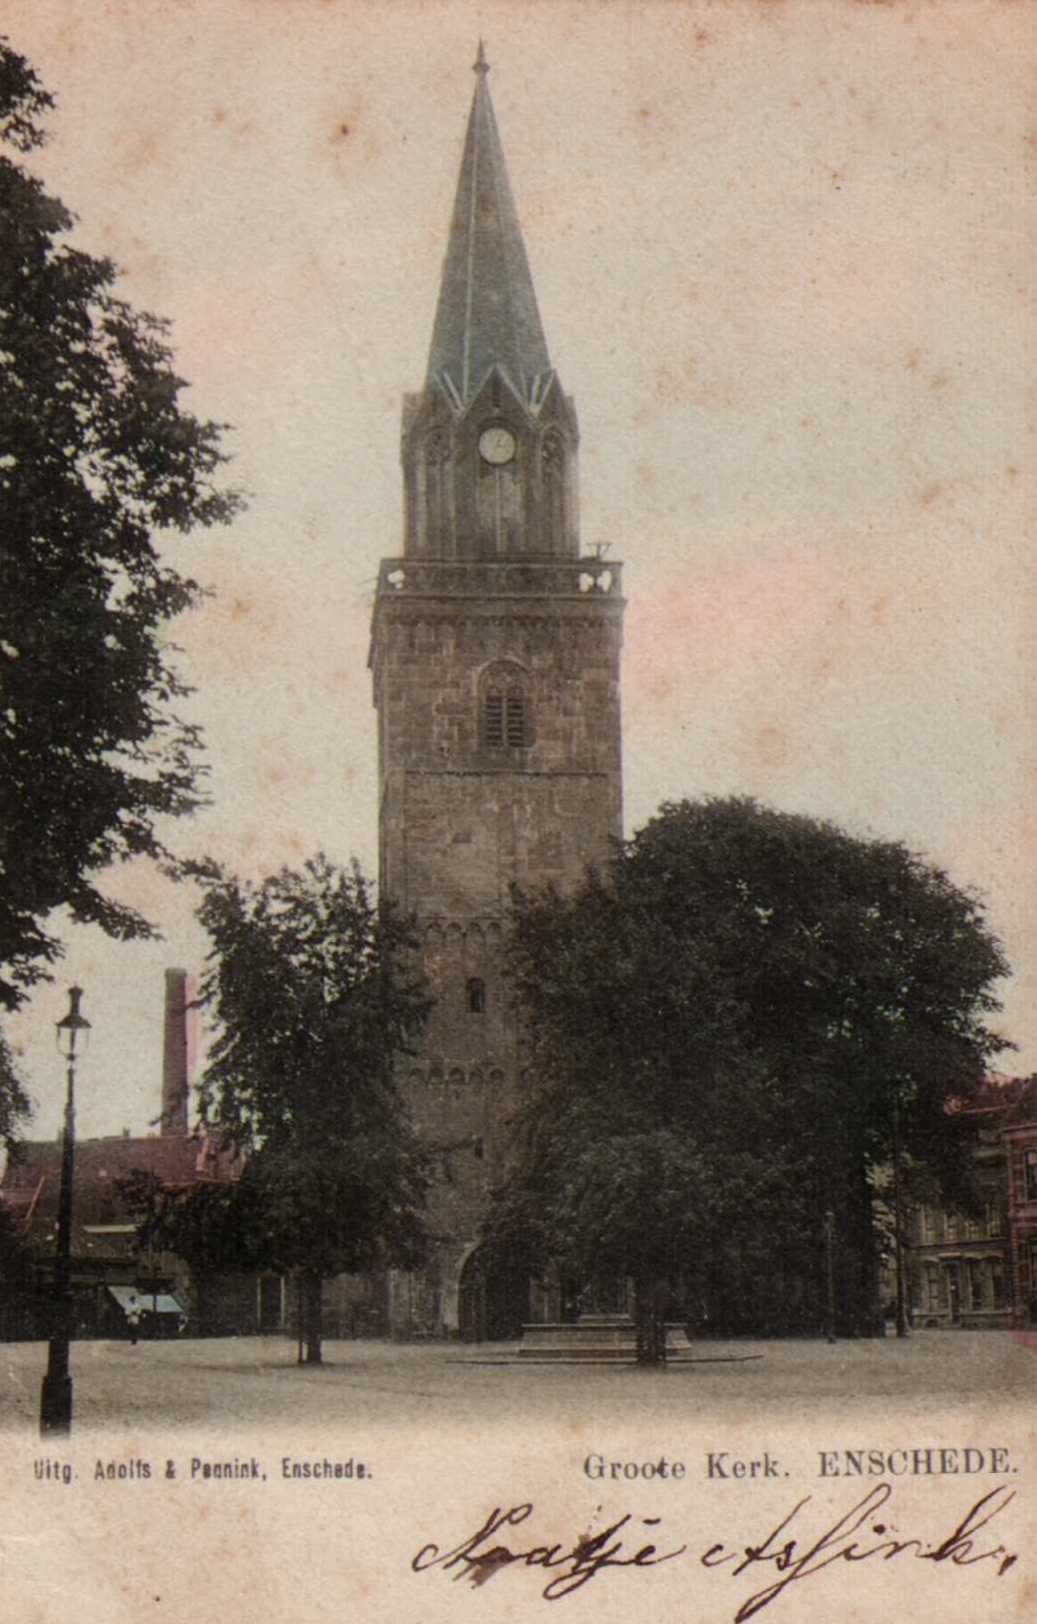 Groote-kerk-1905.jpg